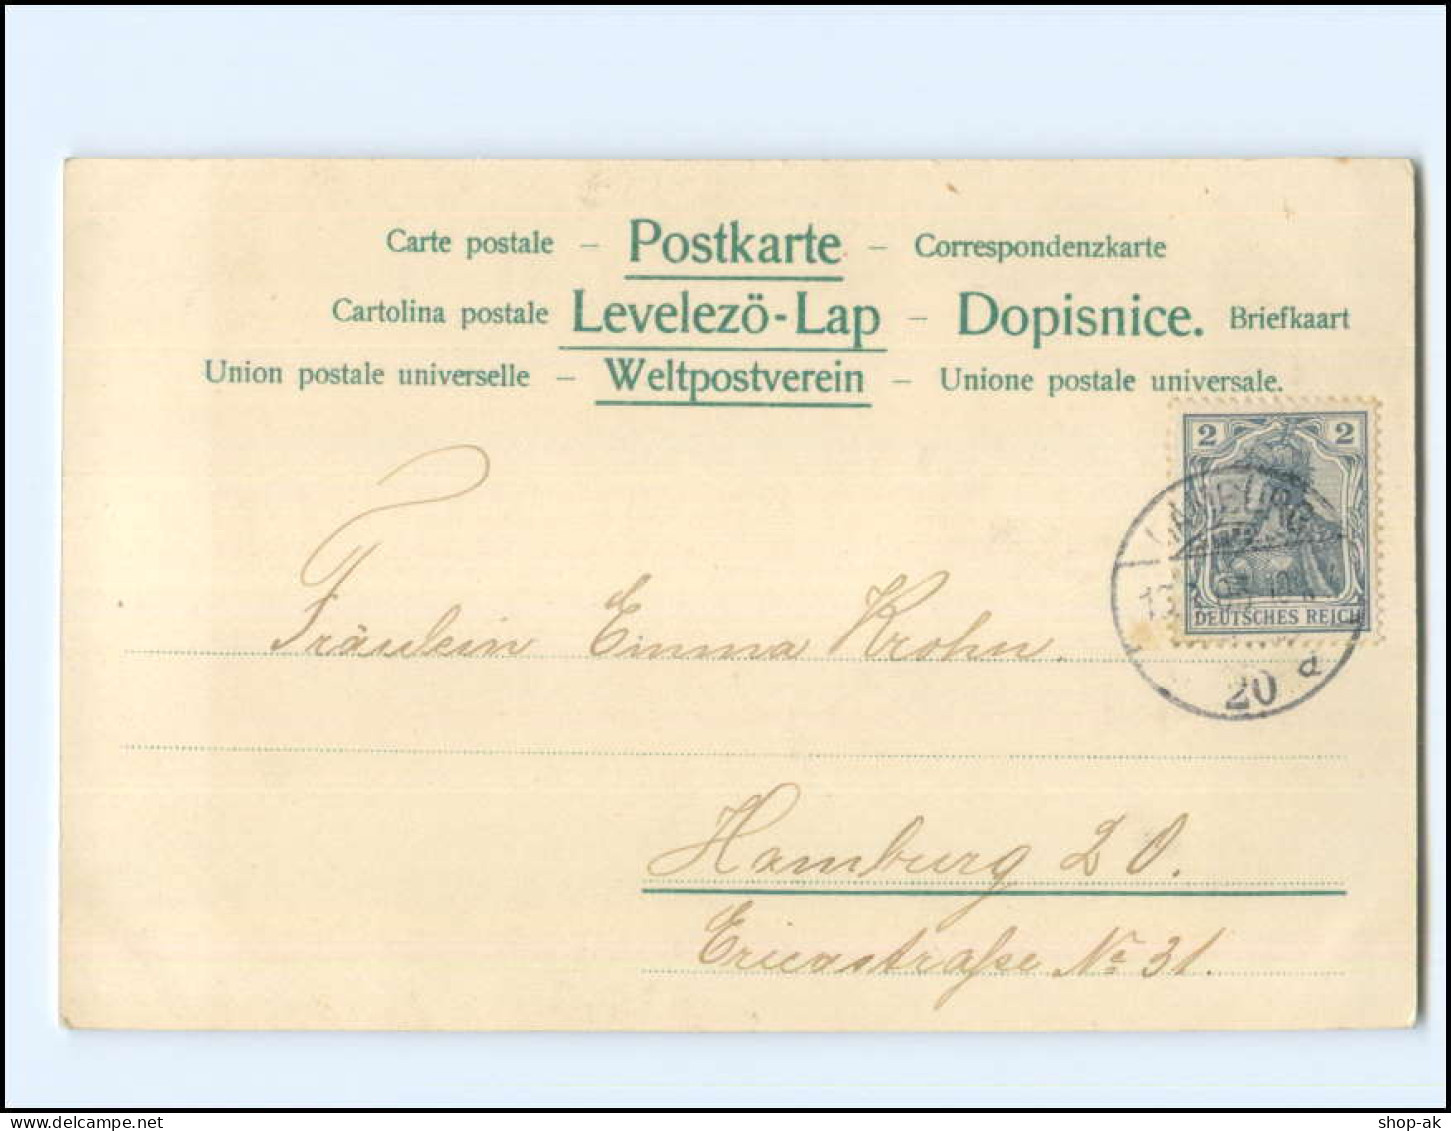 XX11775/ Hamburg Altonaer Künstlerkarten Kaiser Wilhelm-Denkmal 1905 Litho AK - Altona